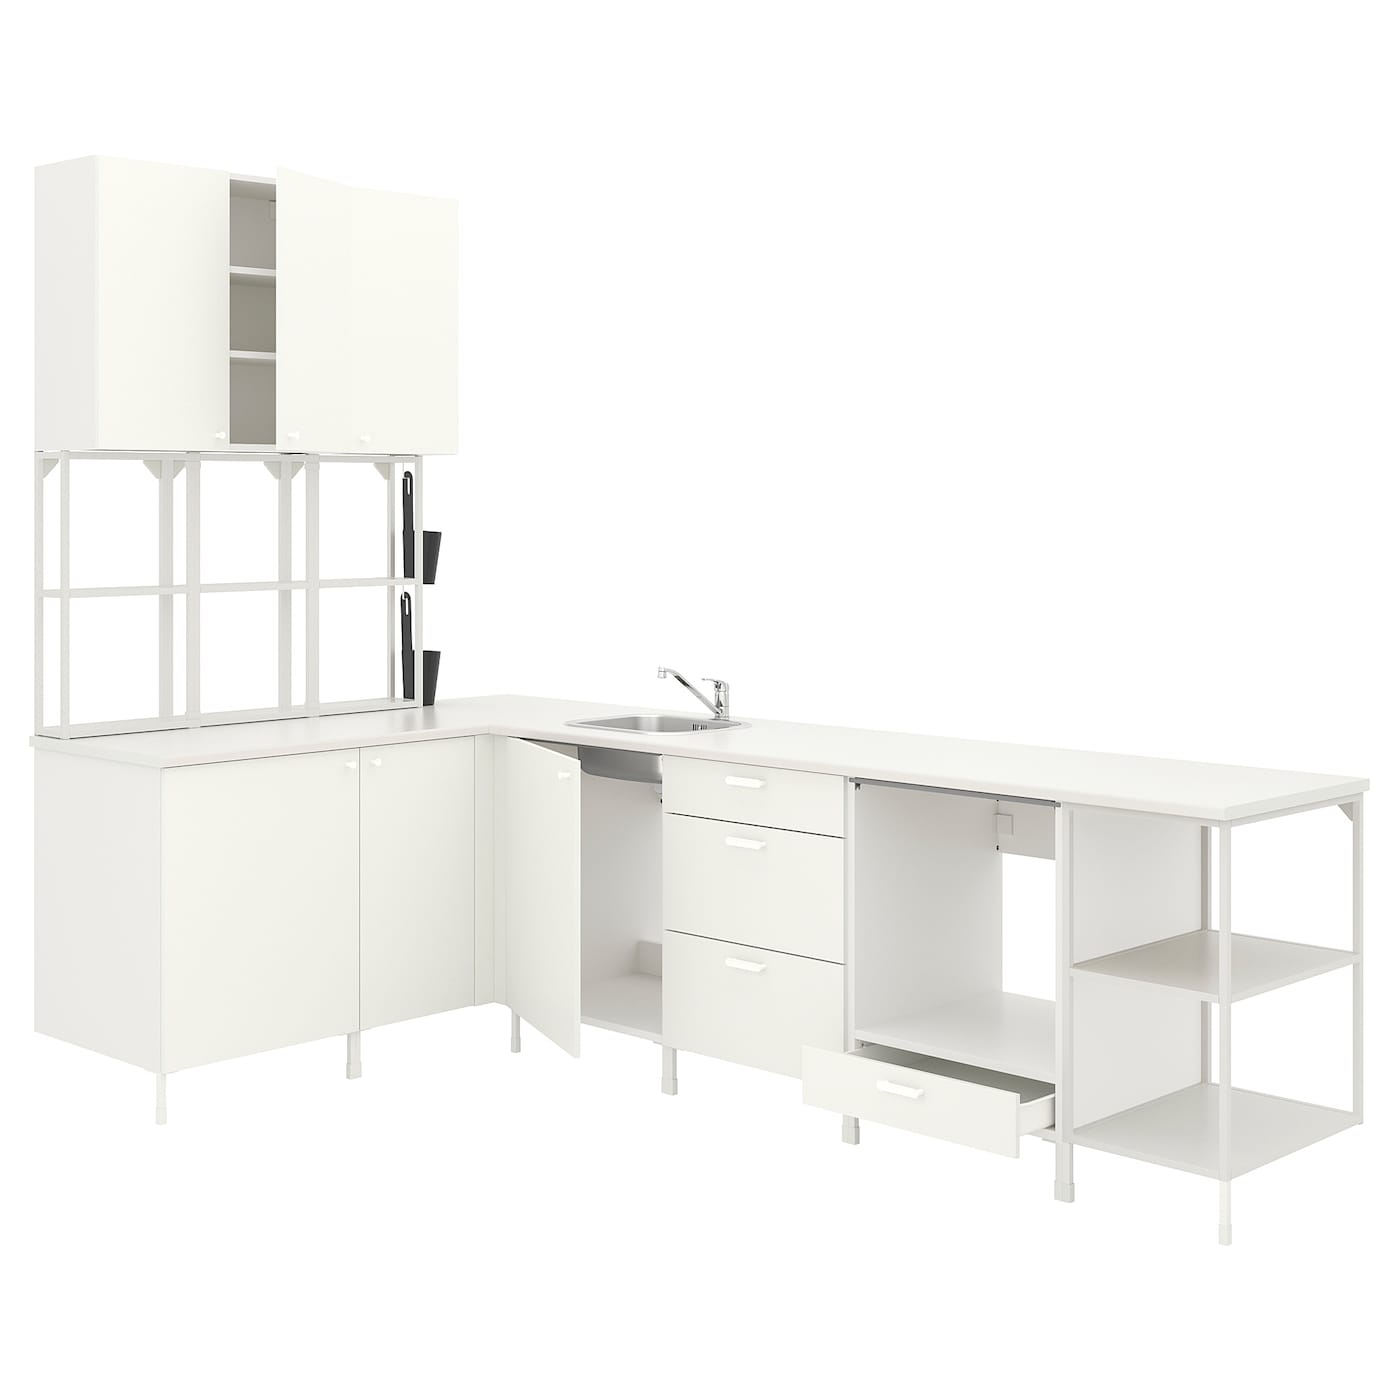 Угловая кухня -  ENHET  IKEA/ ЭНХЕТ ИКЕА, 290,5х150 см, белый